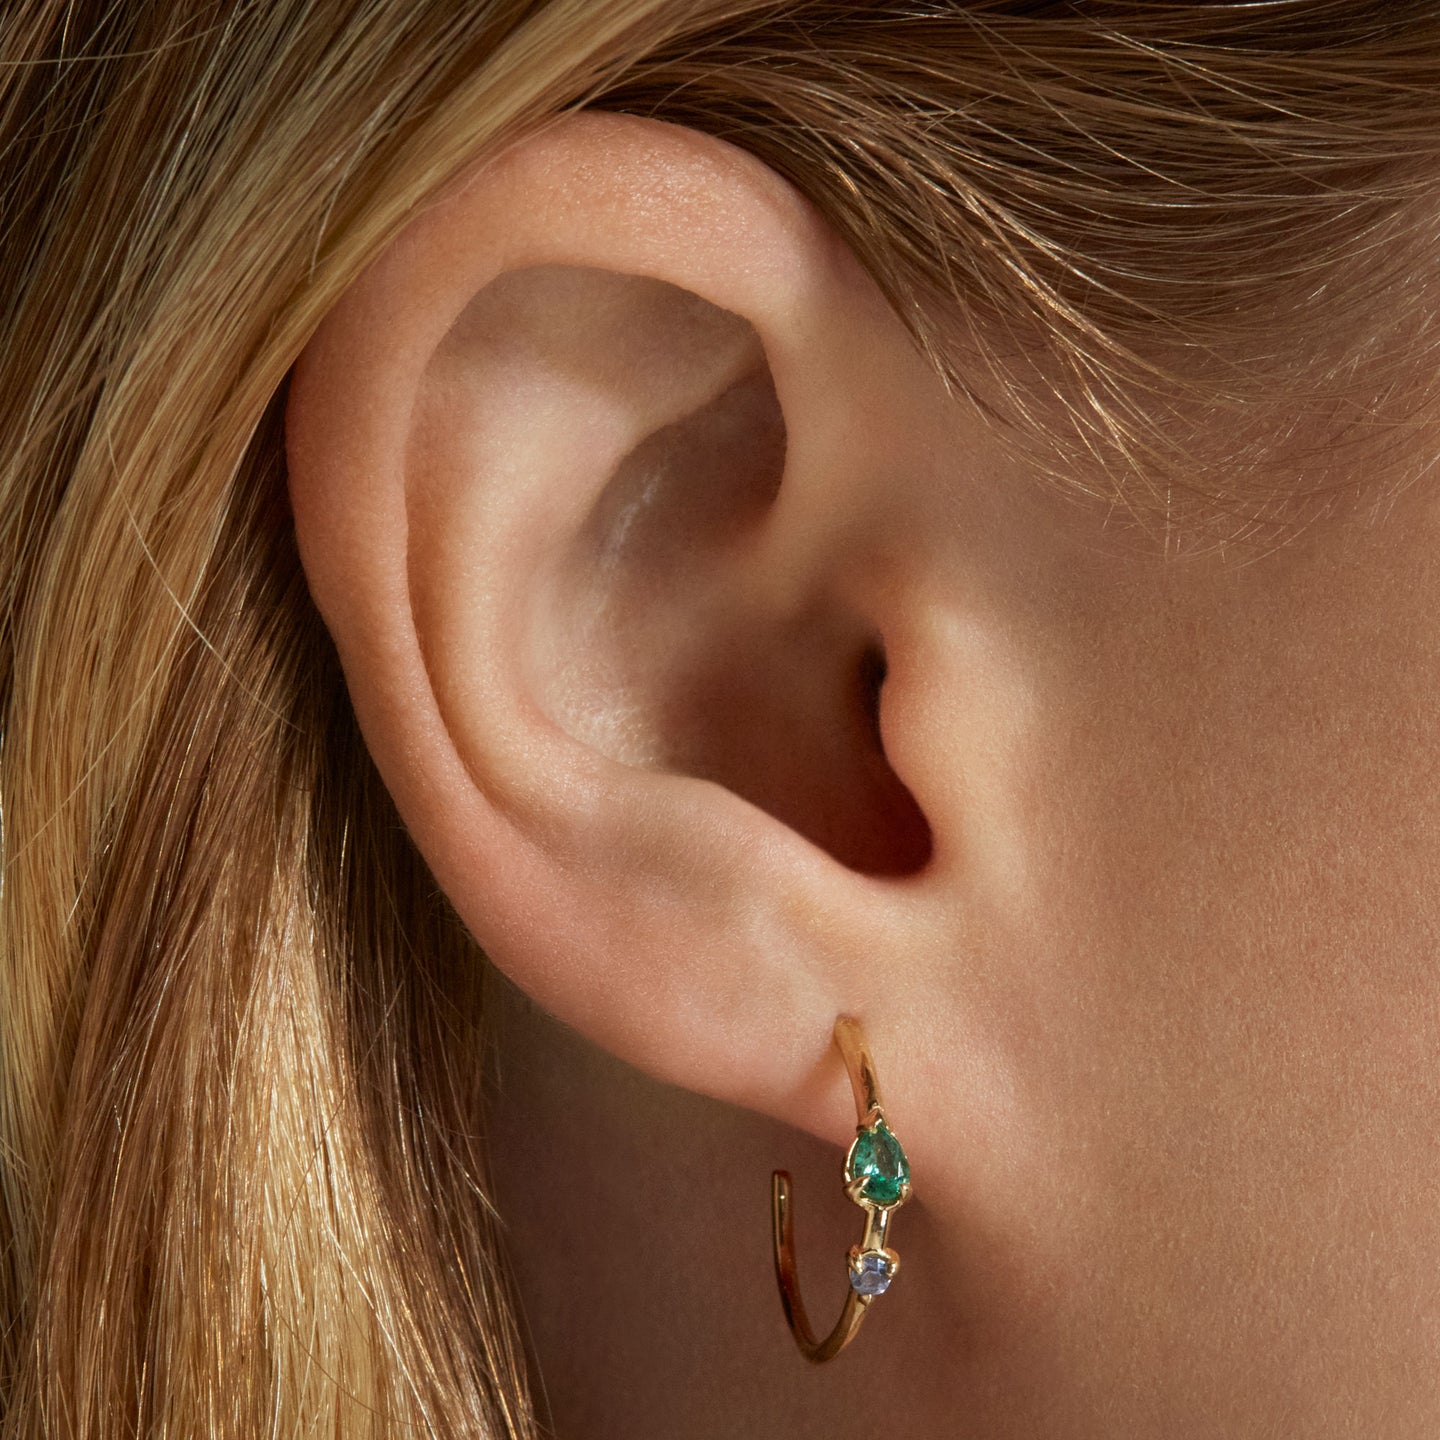 Aerie Neon Clear Hoop Earrings Women's Green Envy One Size